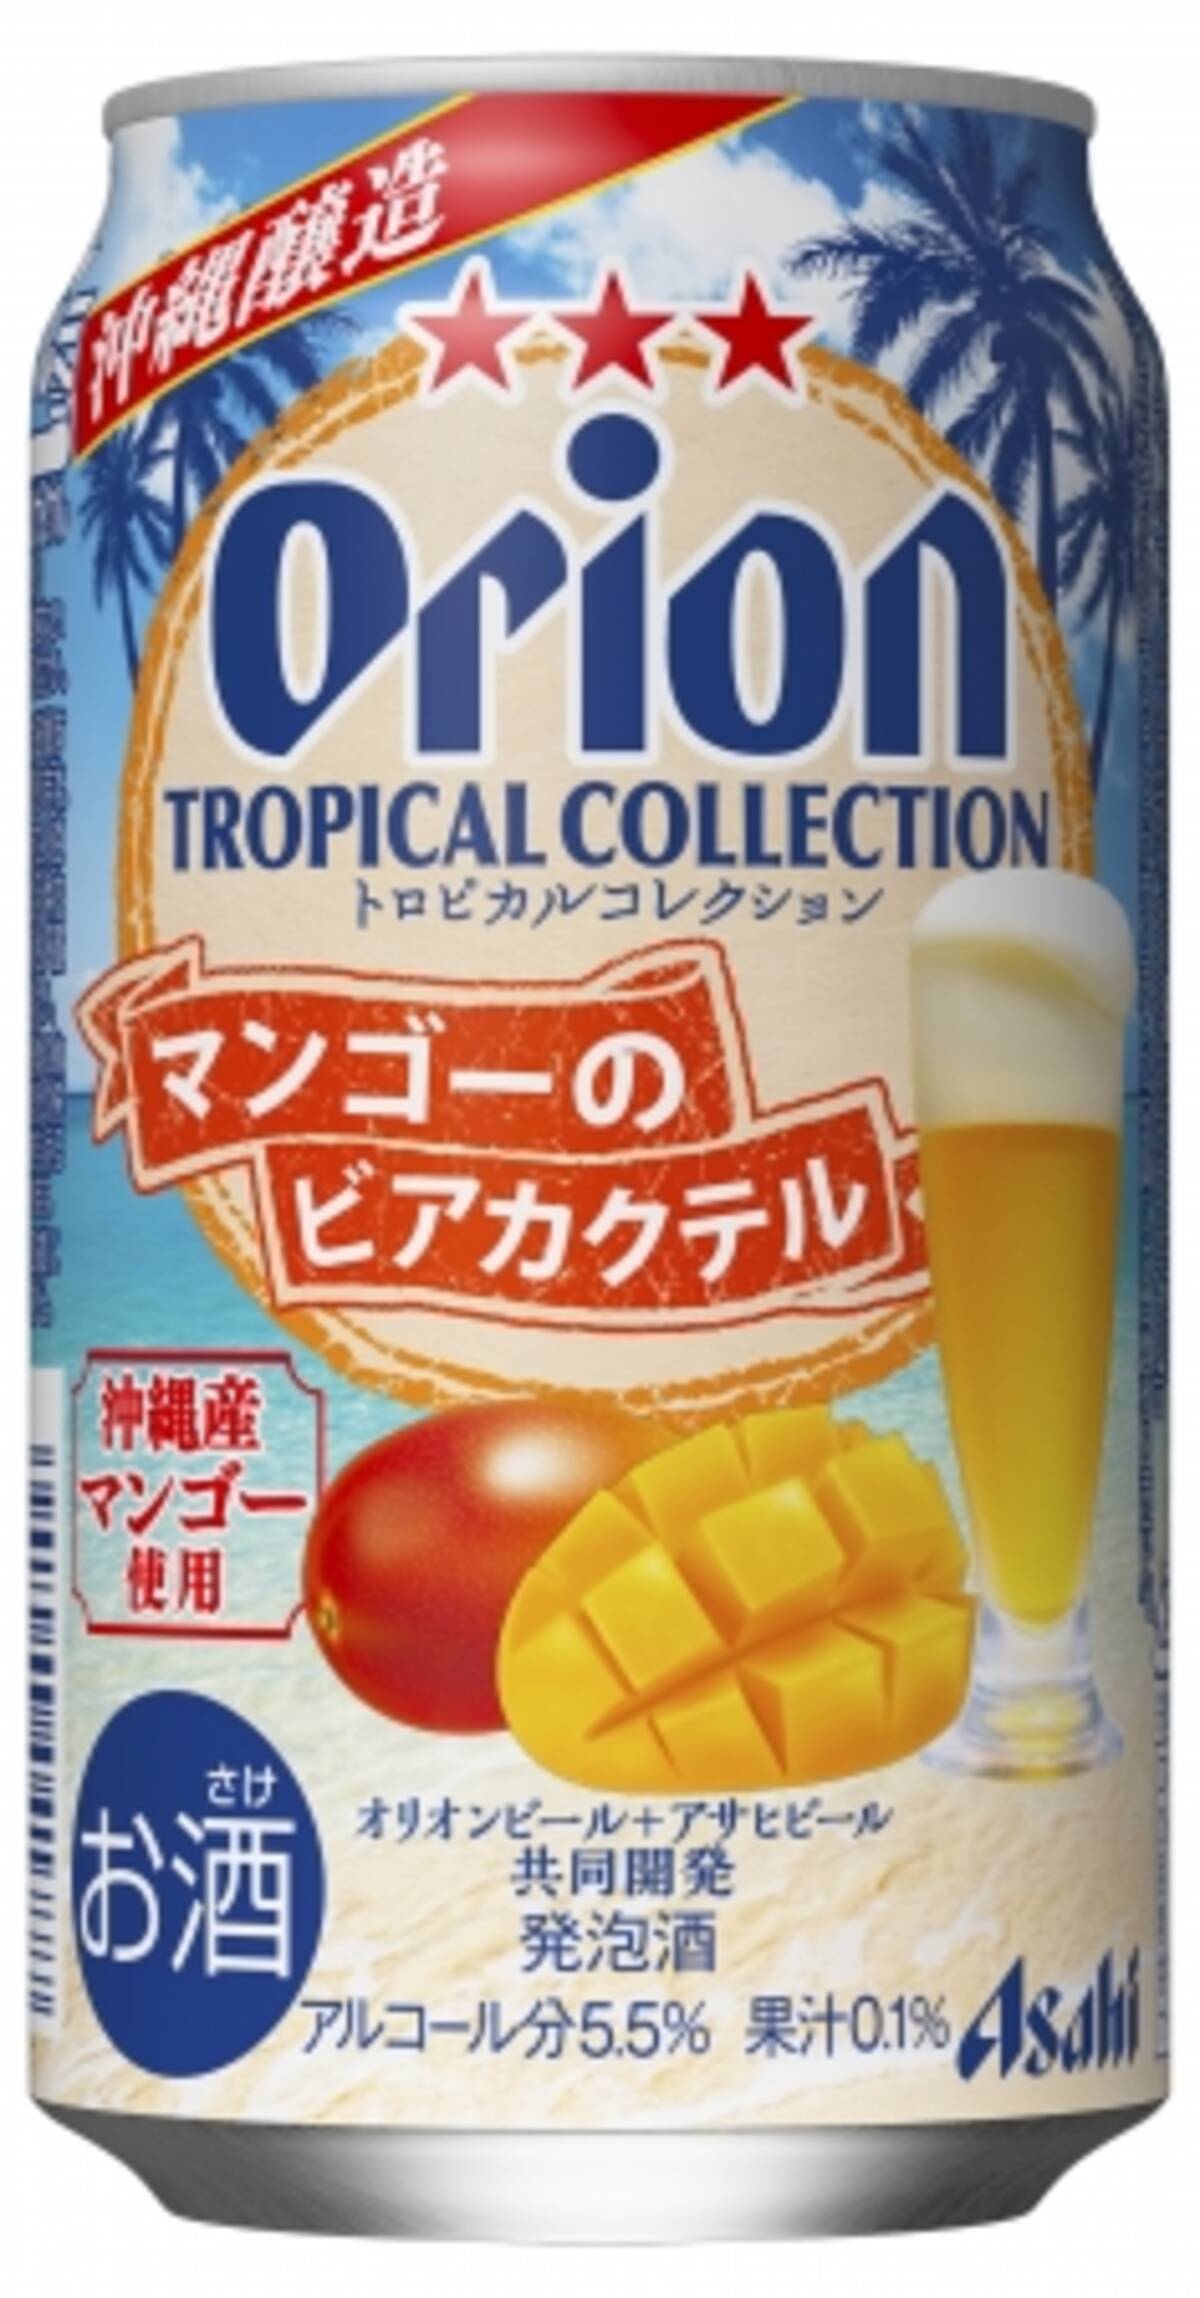 これぞ沖縄の味 オリオンビール からマンゴーのビアカクテル登場 18年8月3日 エキサイトニュース